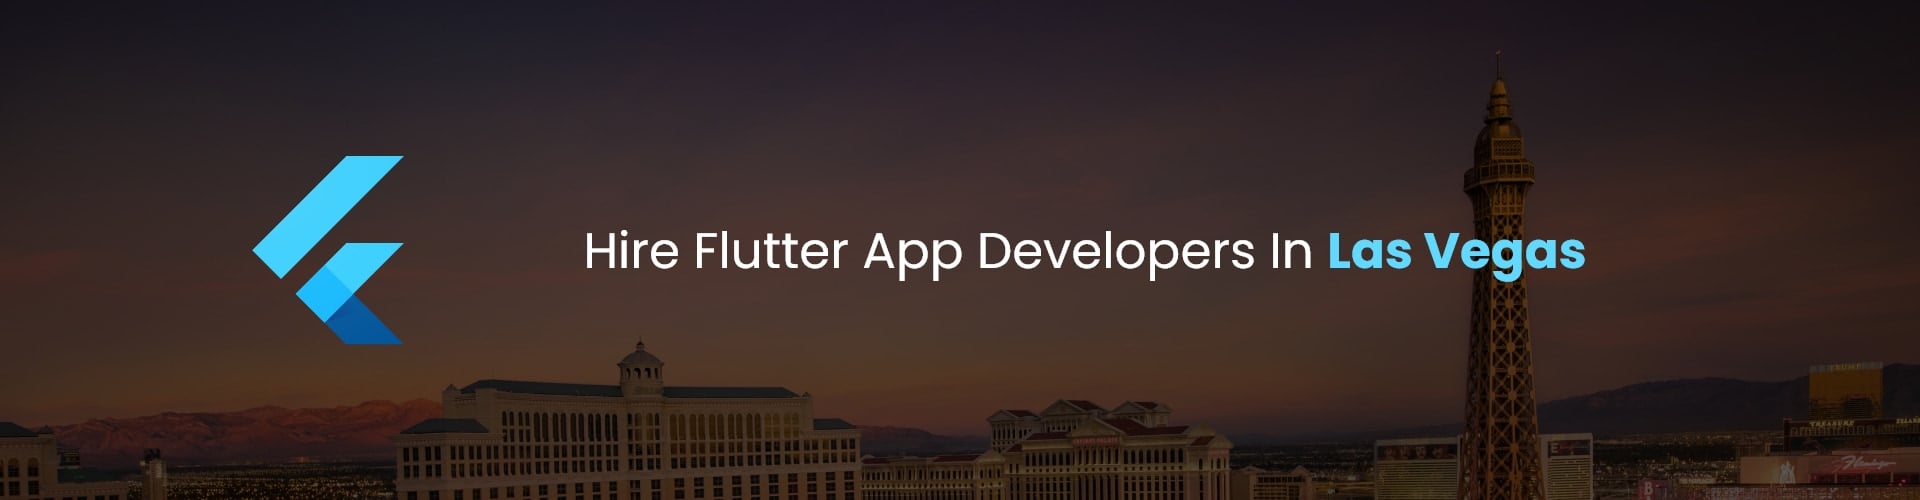 hire flutter app developers in las vegas